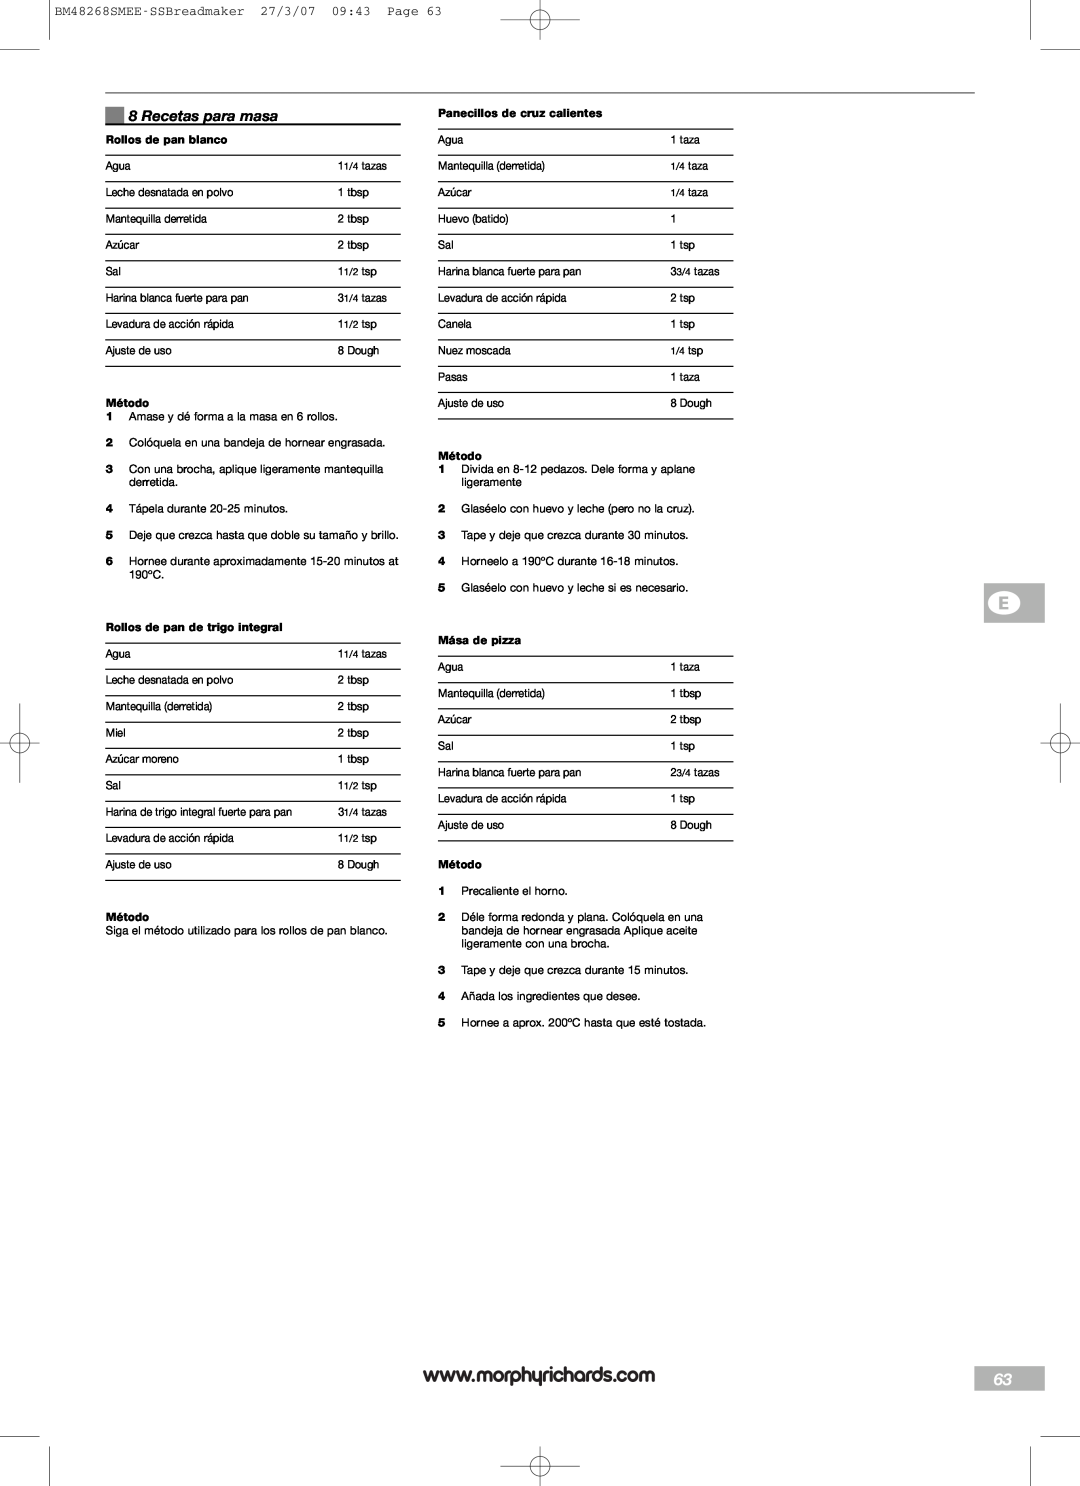 Morphy Richards manual Recetas para masa, BM48268SMEE-SSBreadmaker27/3/07 09:43 Page, Rollos de pan blanco, Método 